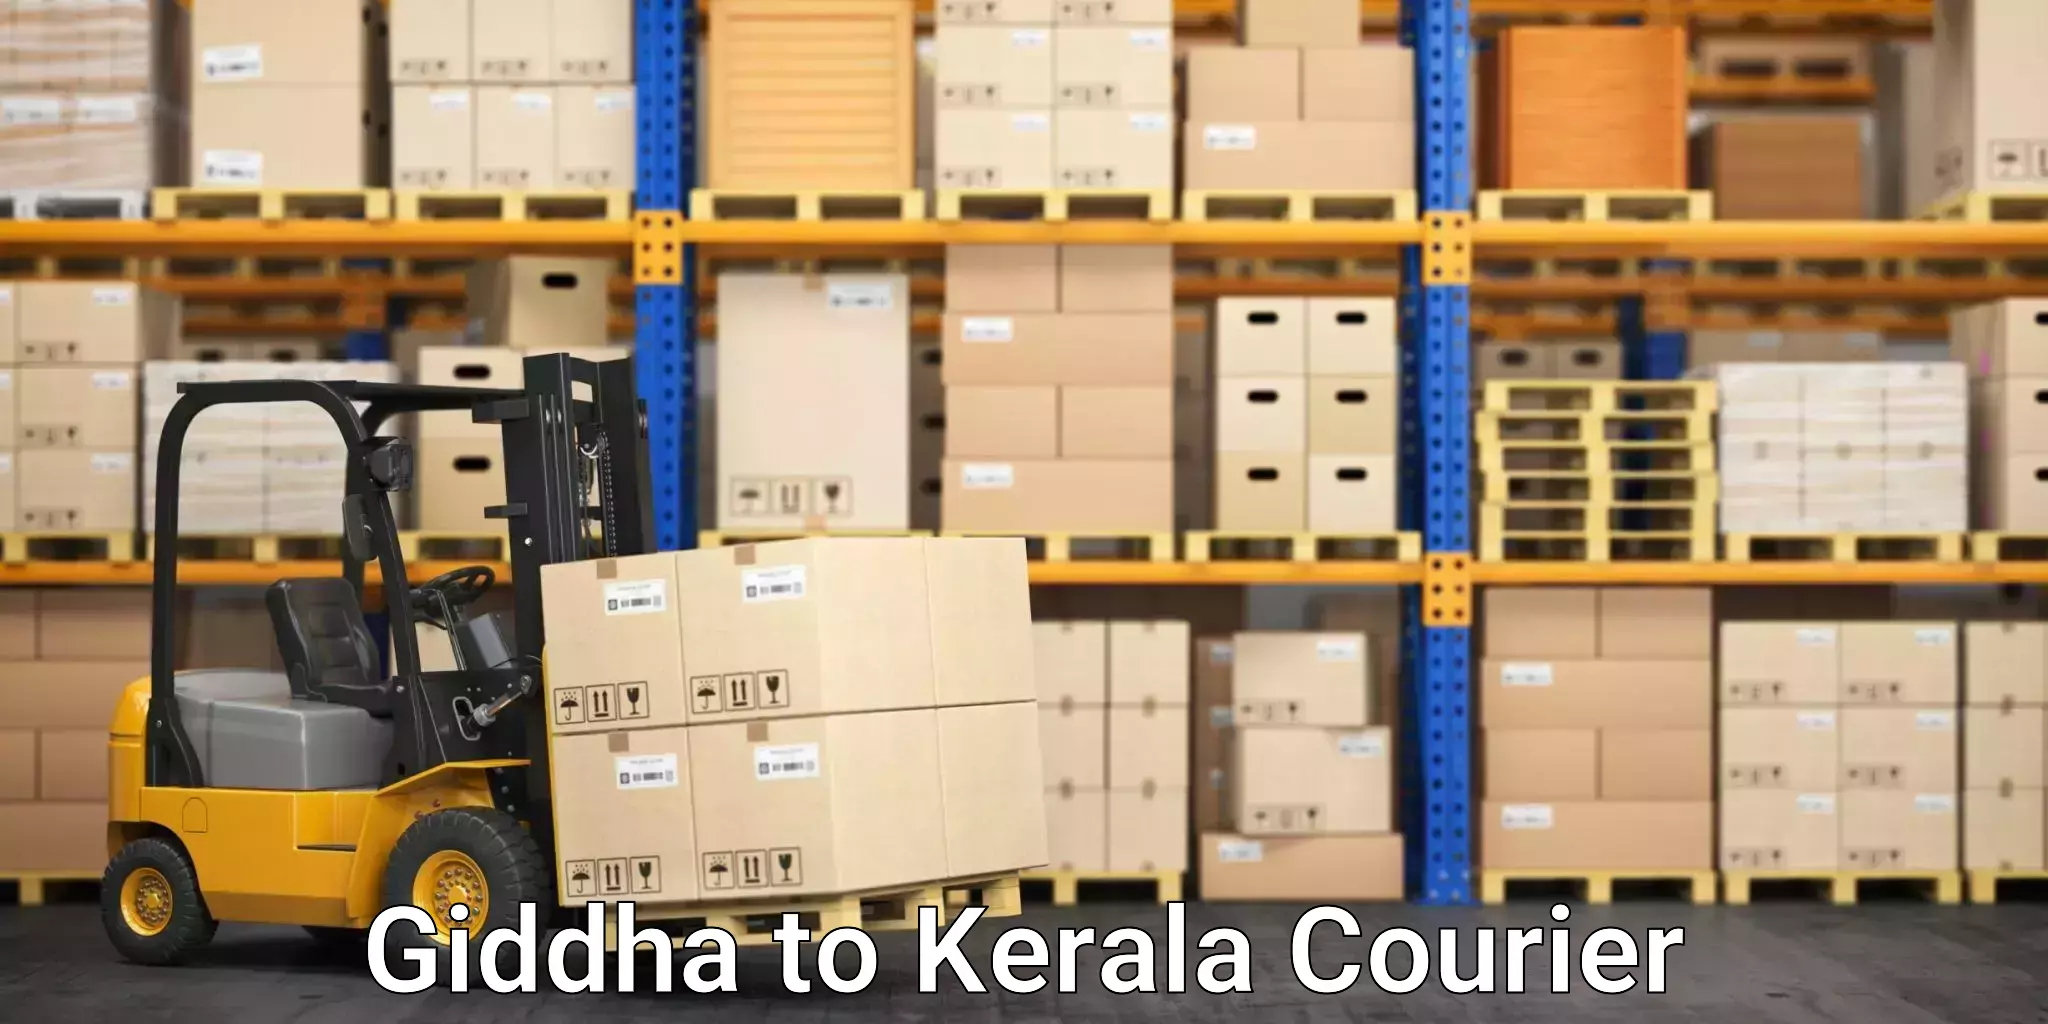 Moving and packing experts Giddha to Karunagappally